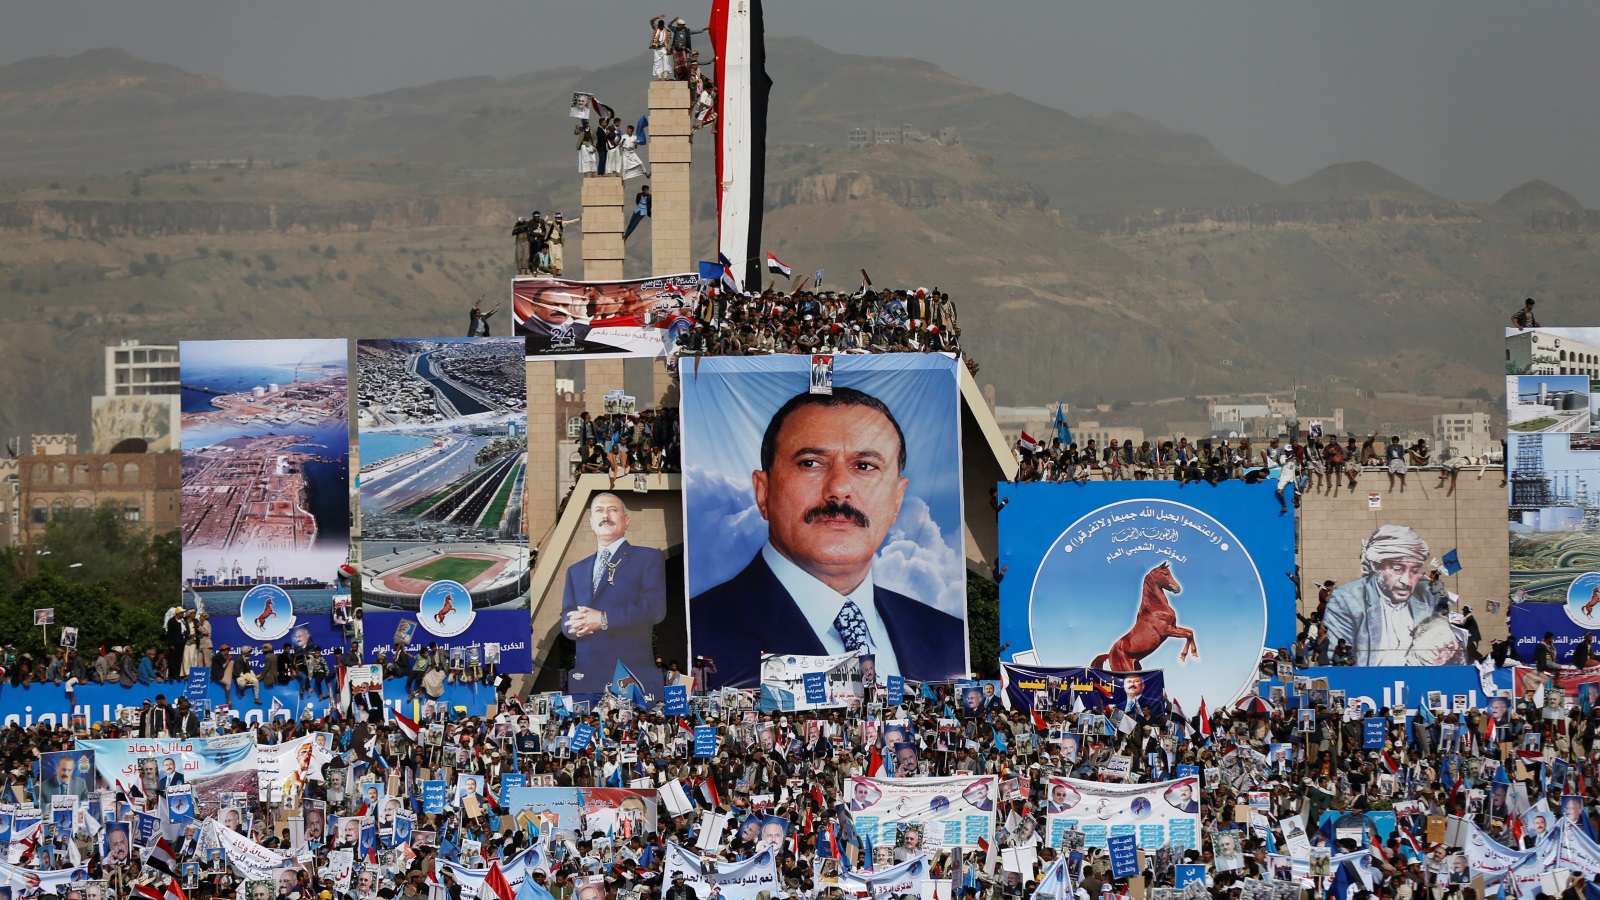 لم يقدر أحدٌ على الحديث إلى اليمنيين في المؤتمر الشعبي سوى صالح، وصالح هو اليمن، وعلى اليمنيين الحزن عليه كل الأيام وكل الليالي